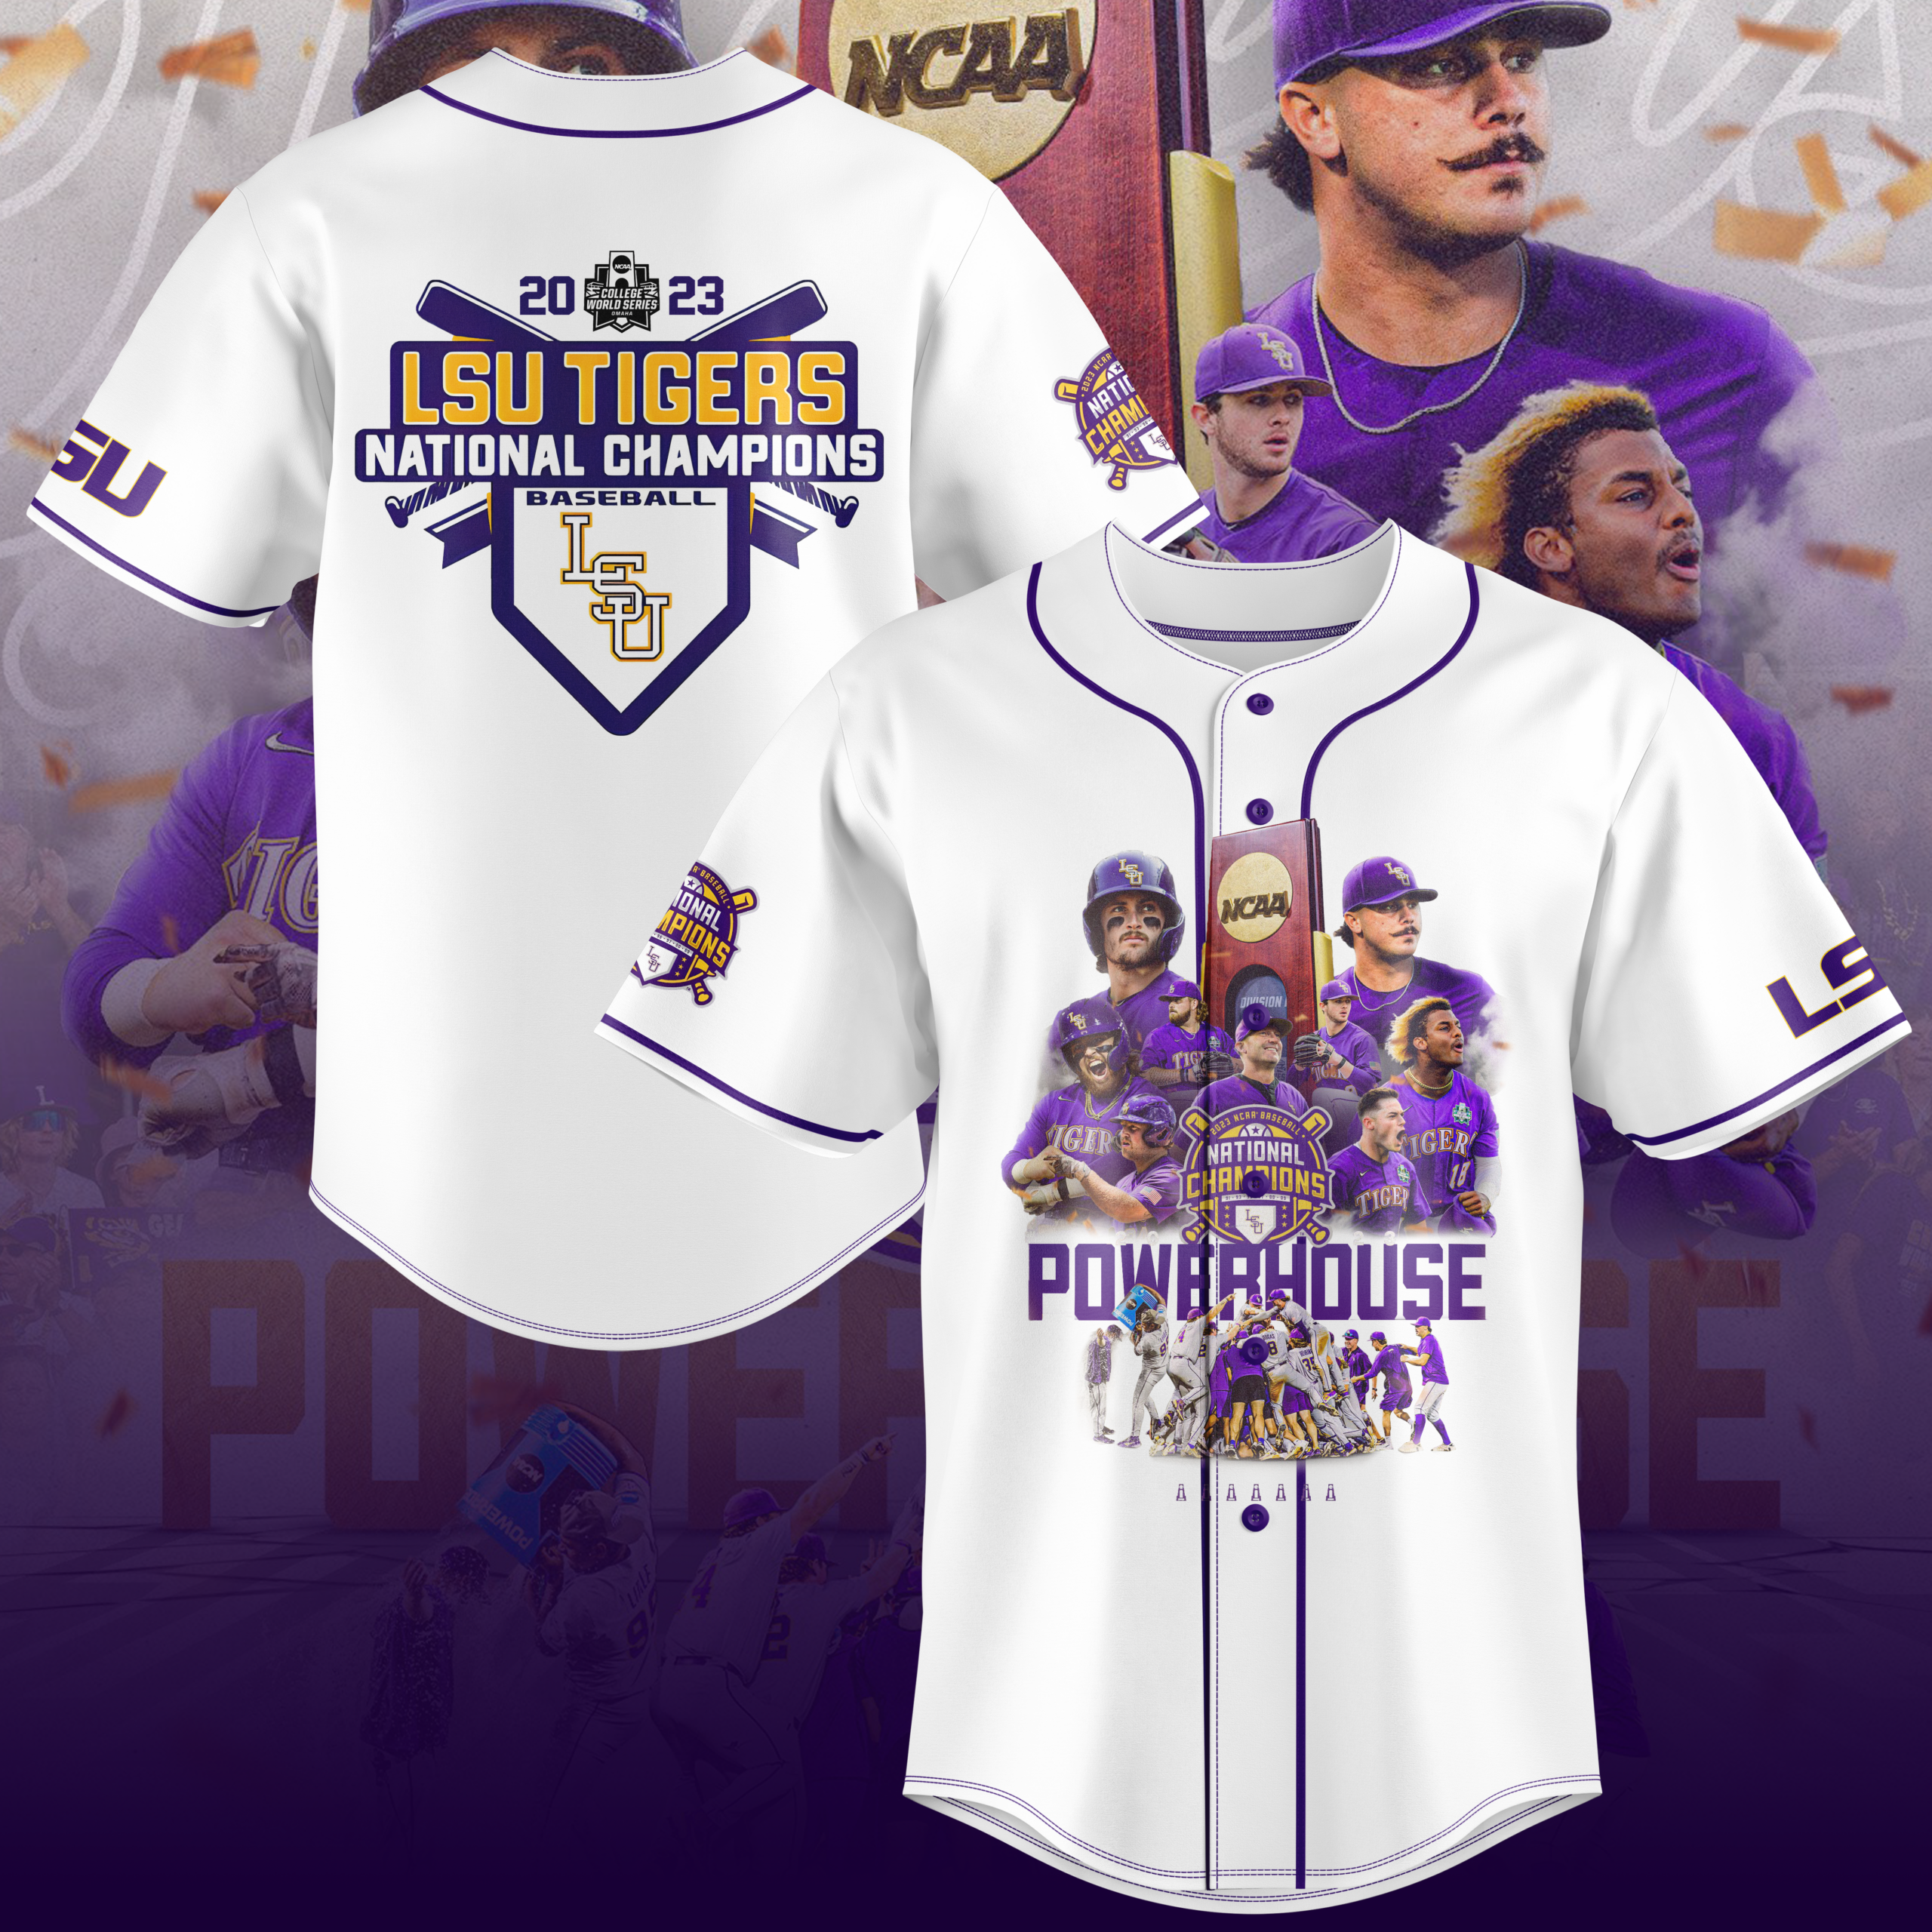 LSU Baseball Gear, LSU Tigers Baseball Jerseys, Hats, T-Shirts